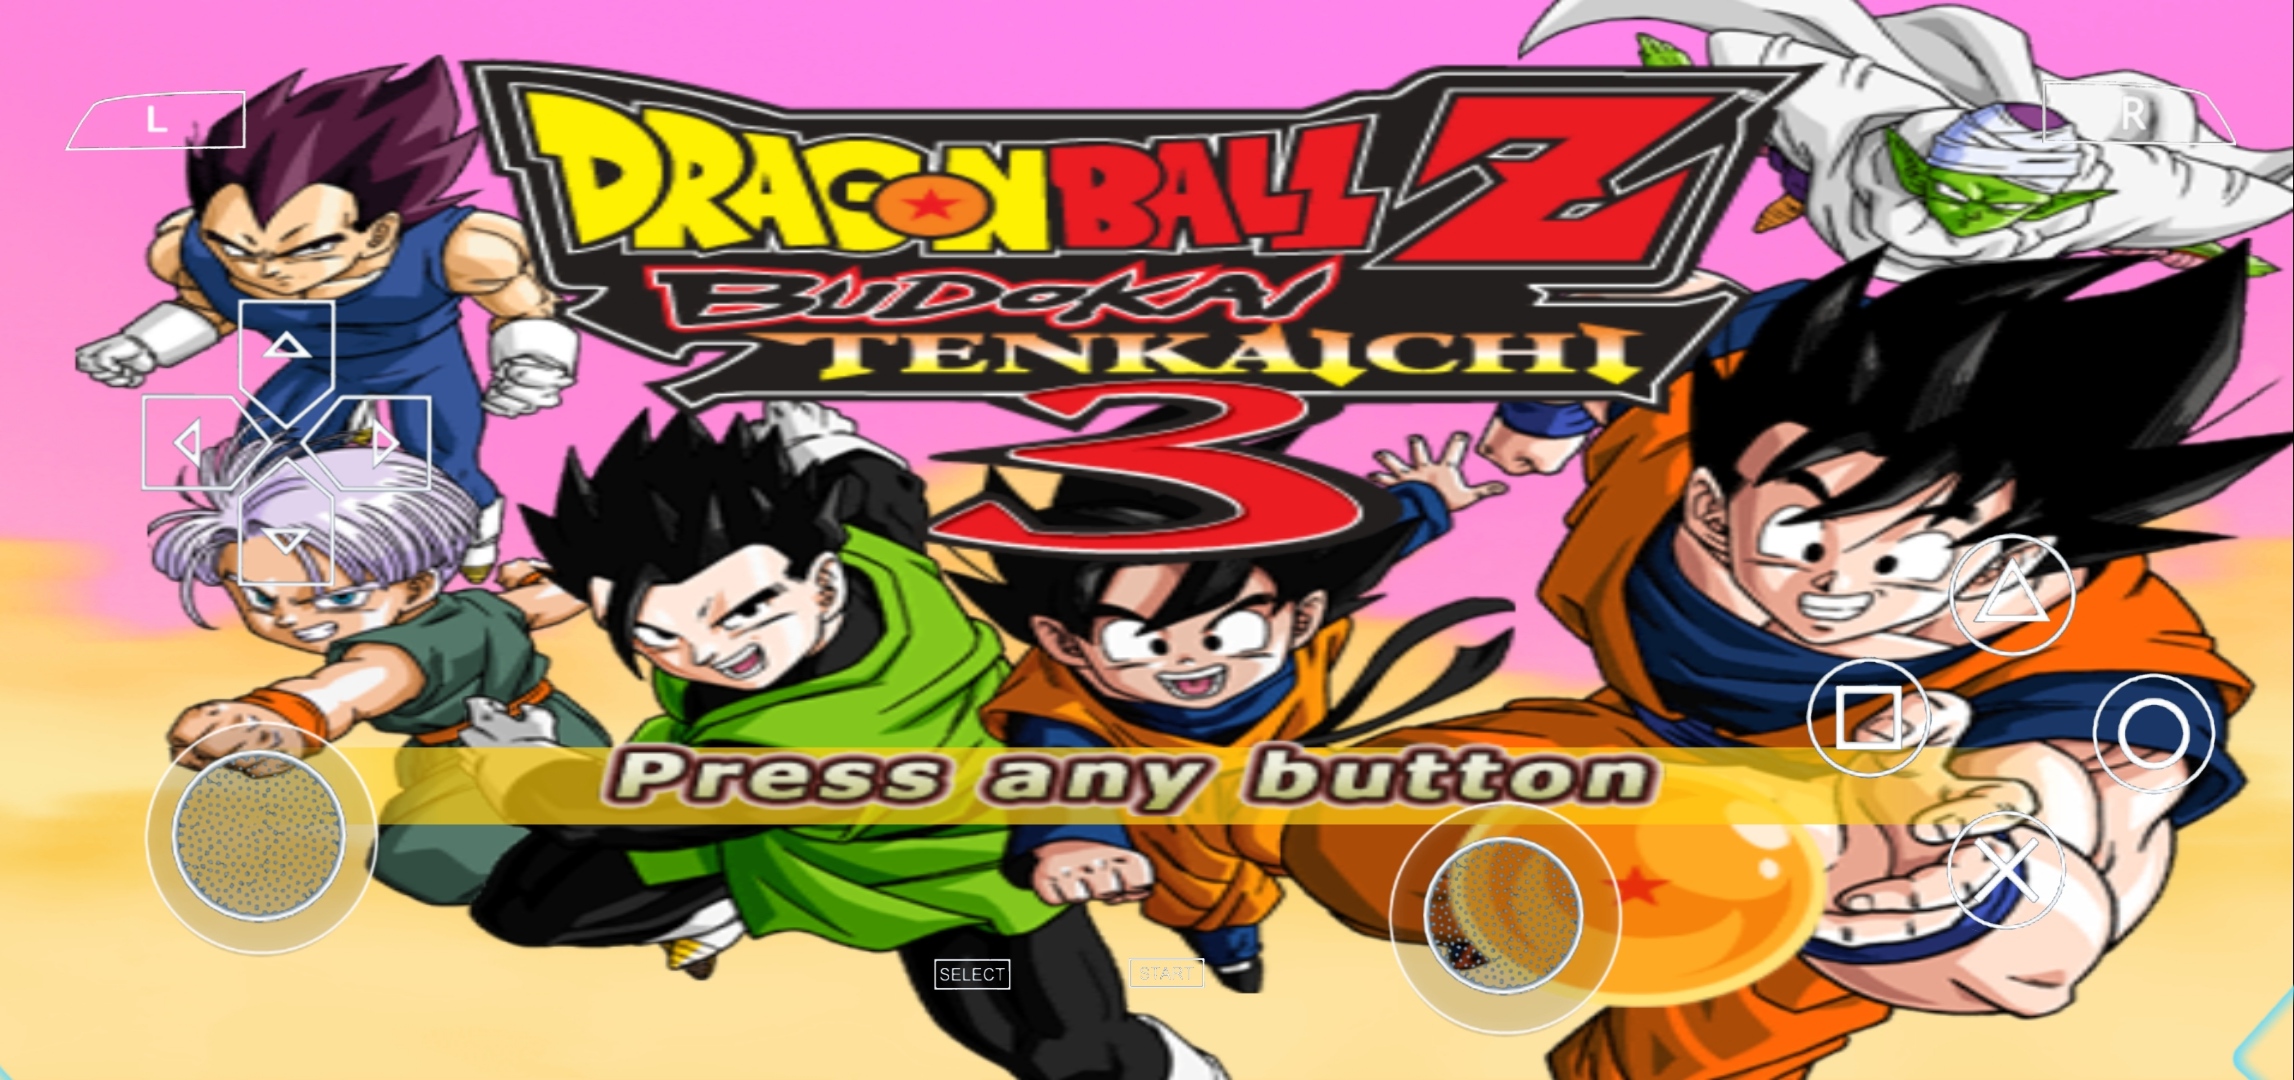 Dragon Ball Z Budokai Tenkaichi 3 Ppsspp Download Android4game